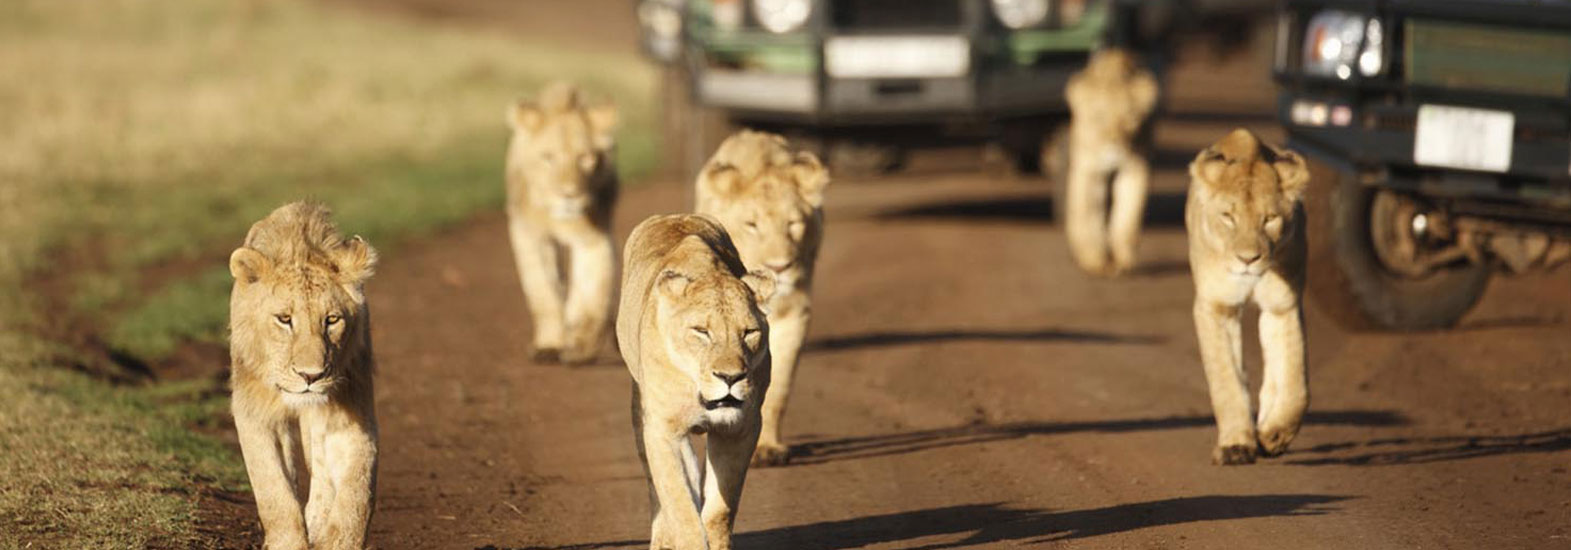 18-Day Luxury African Safari